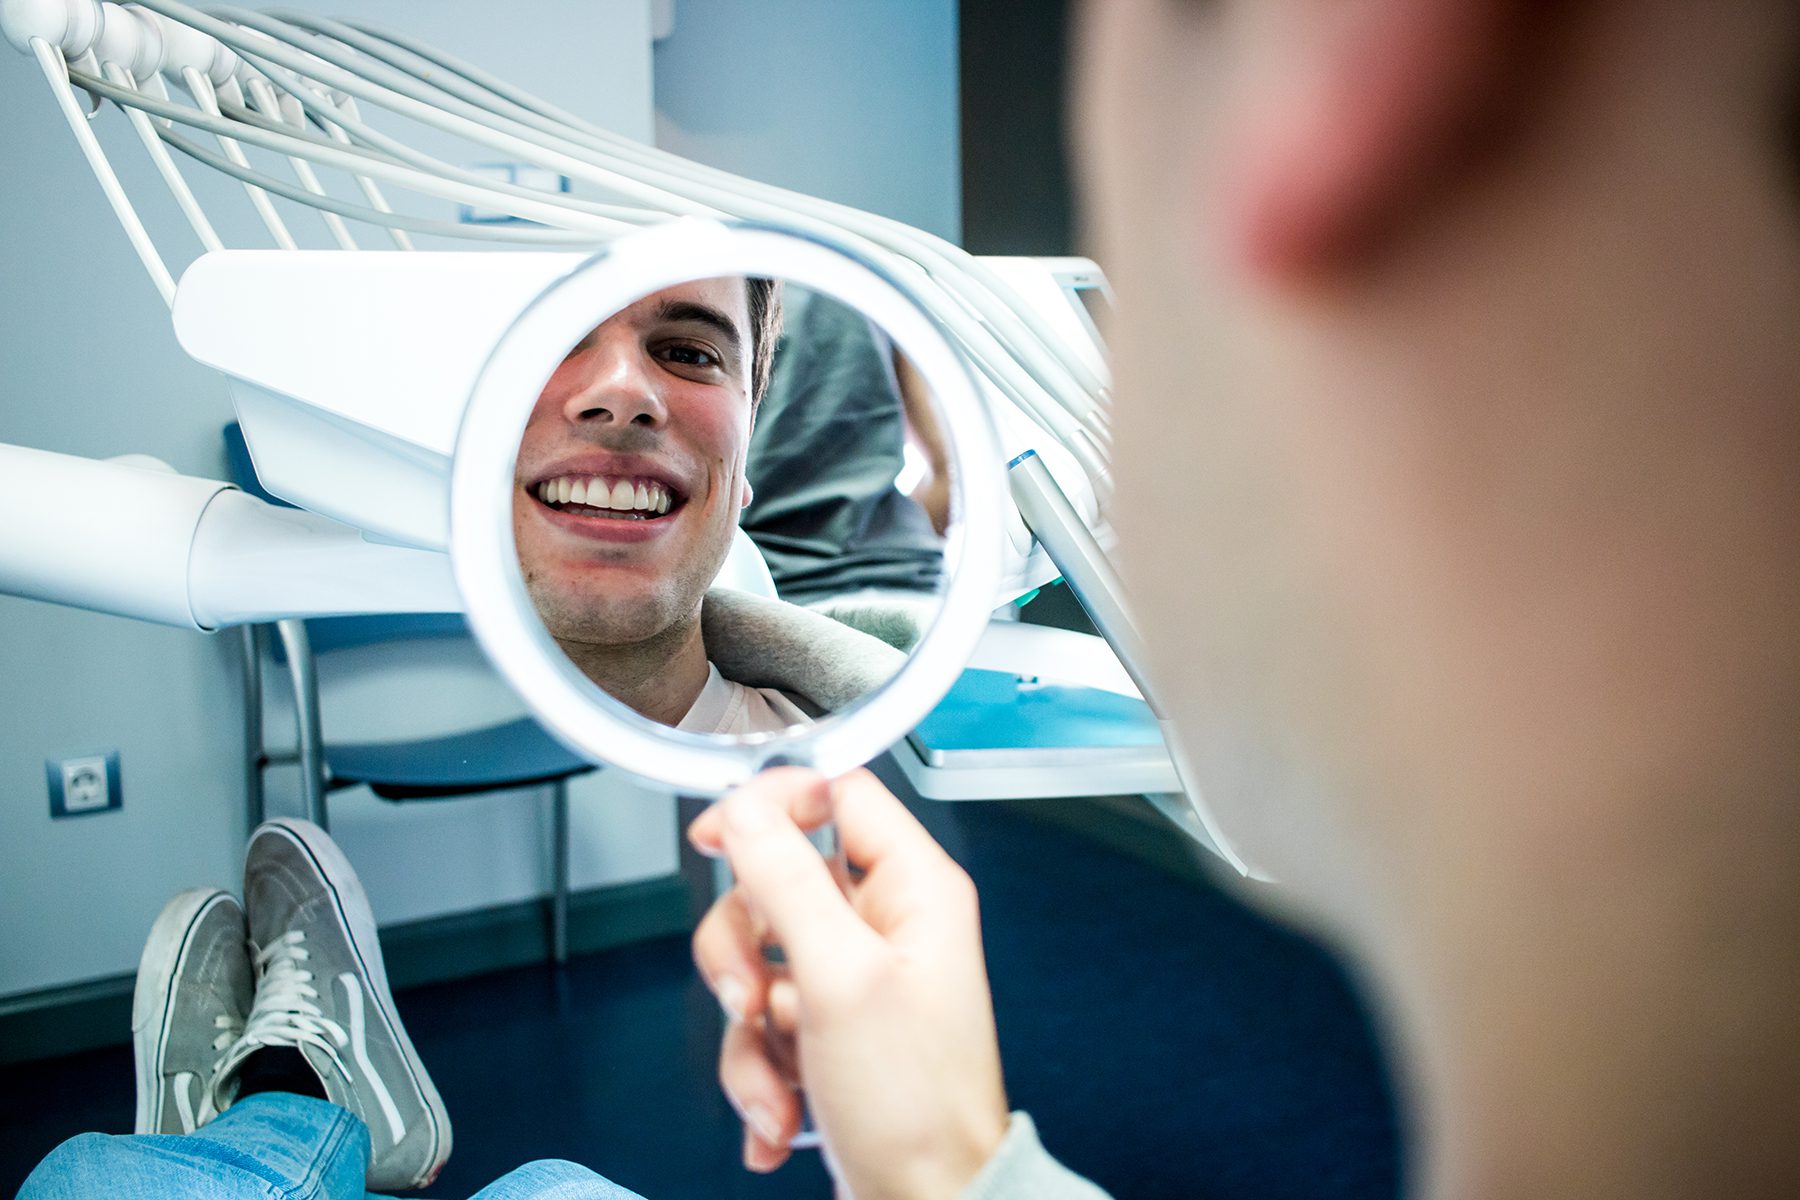 Riesgos de tratamiento de ortodoncia invisible por internet